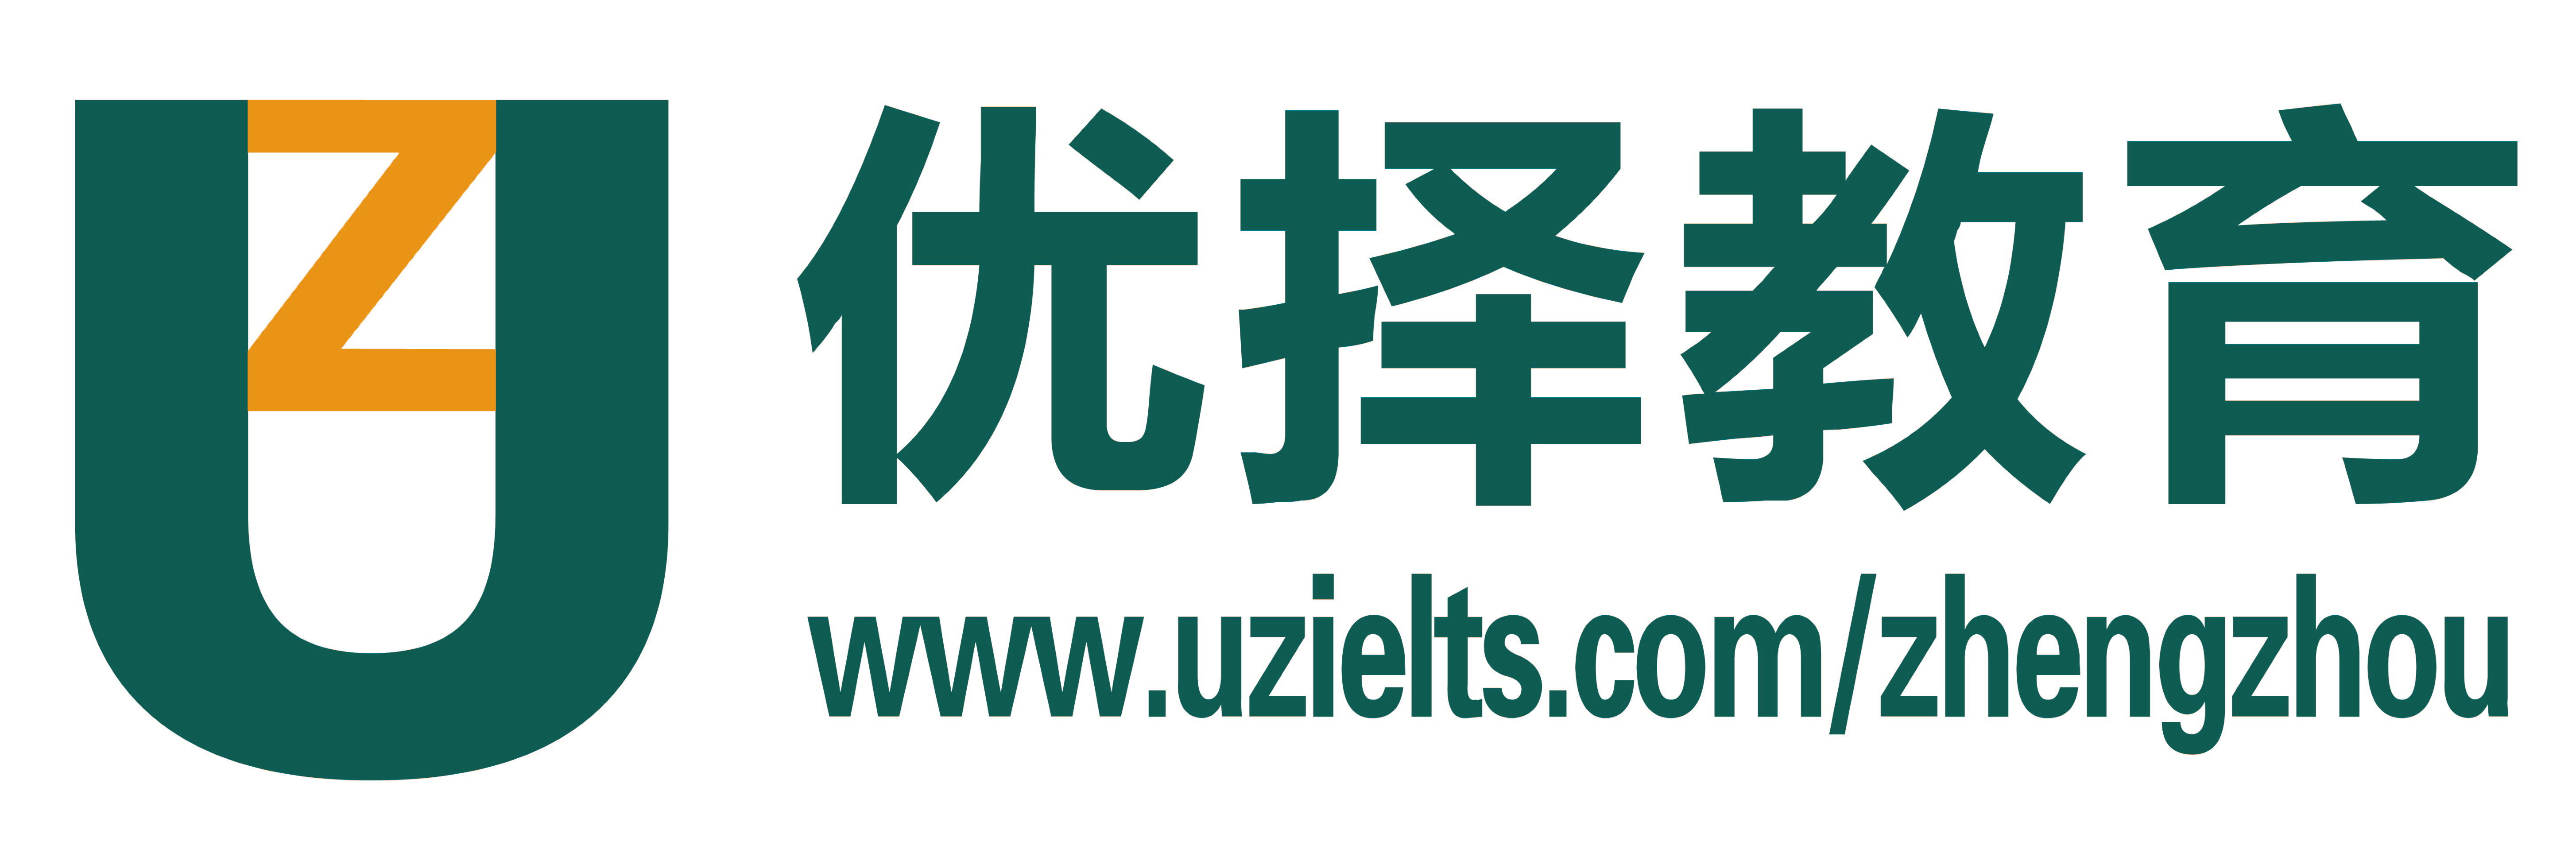 郑州优择教育logo